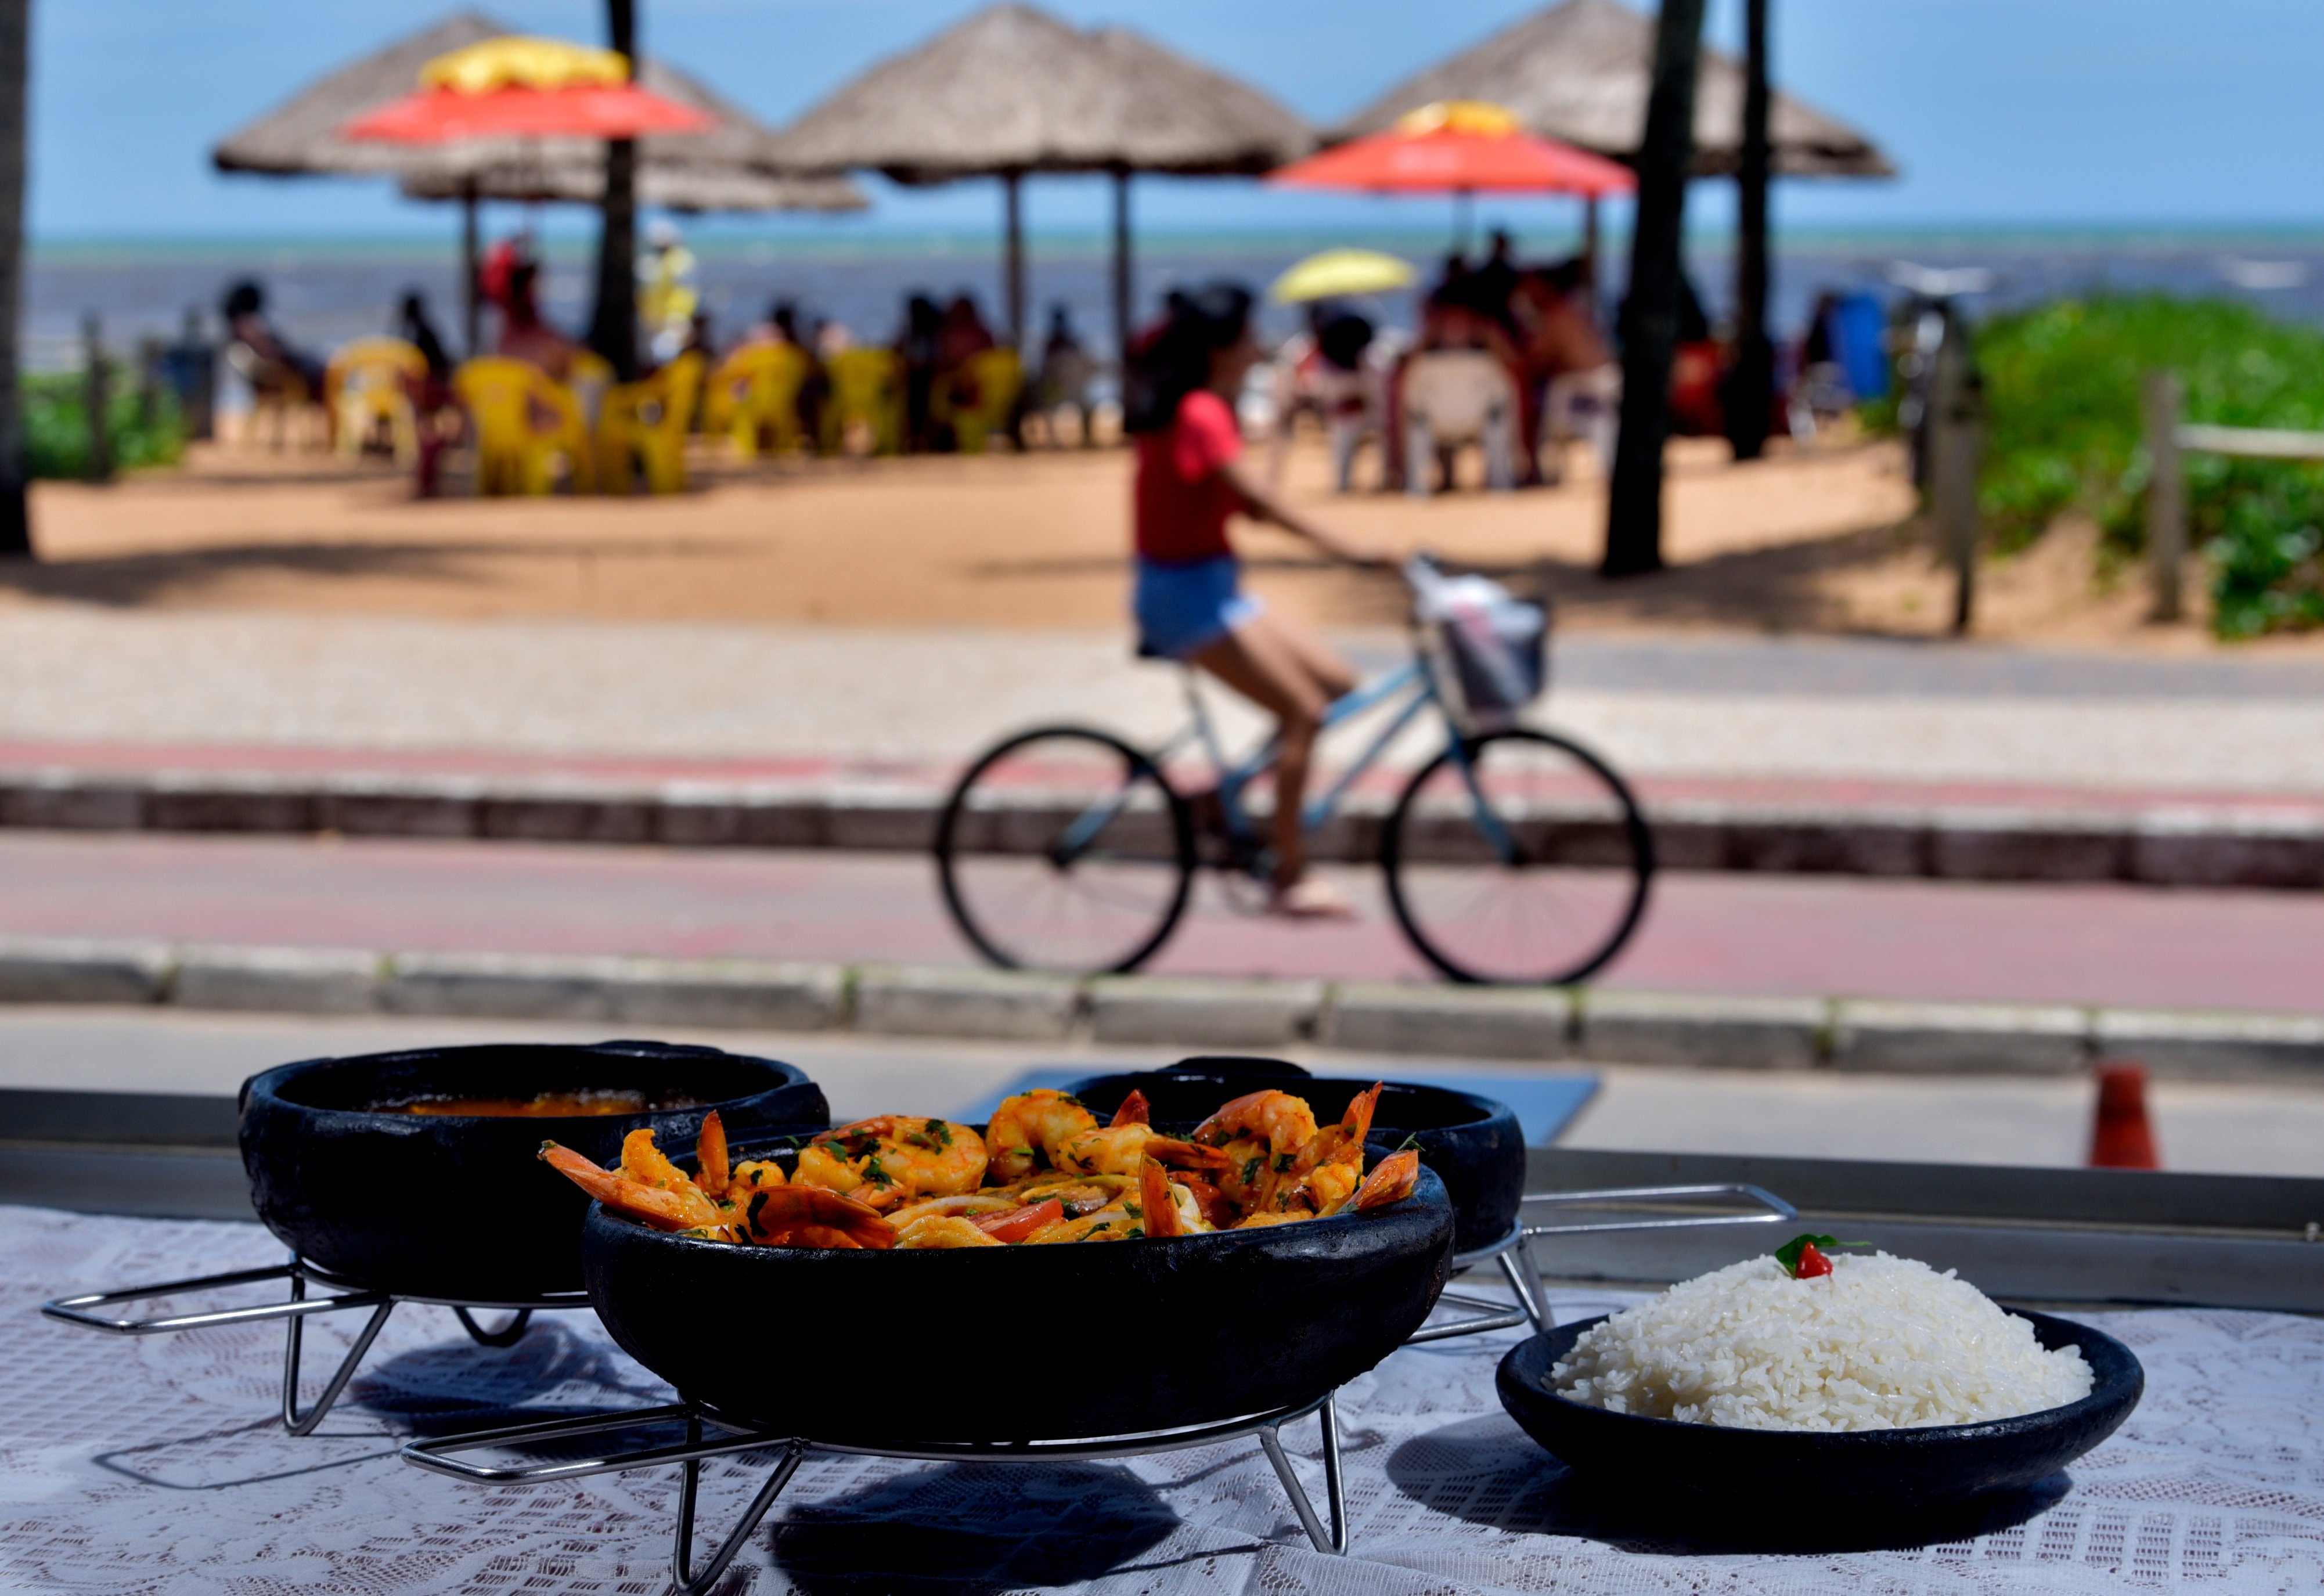 Lista reúne dicas de onde comer o prato pertinho da praia, em Jacaraípe, Manguinhos, Ponta da Fruta, Praia Grande, Ubu e Iriri